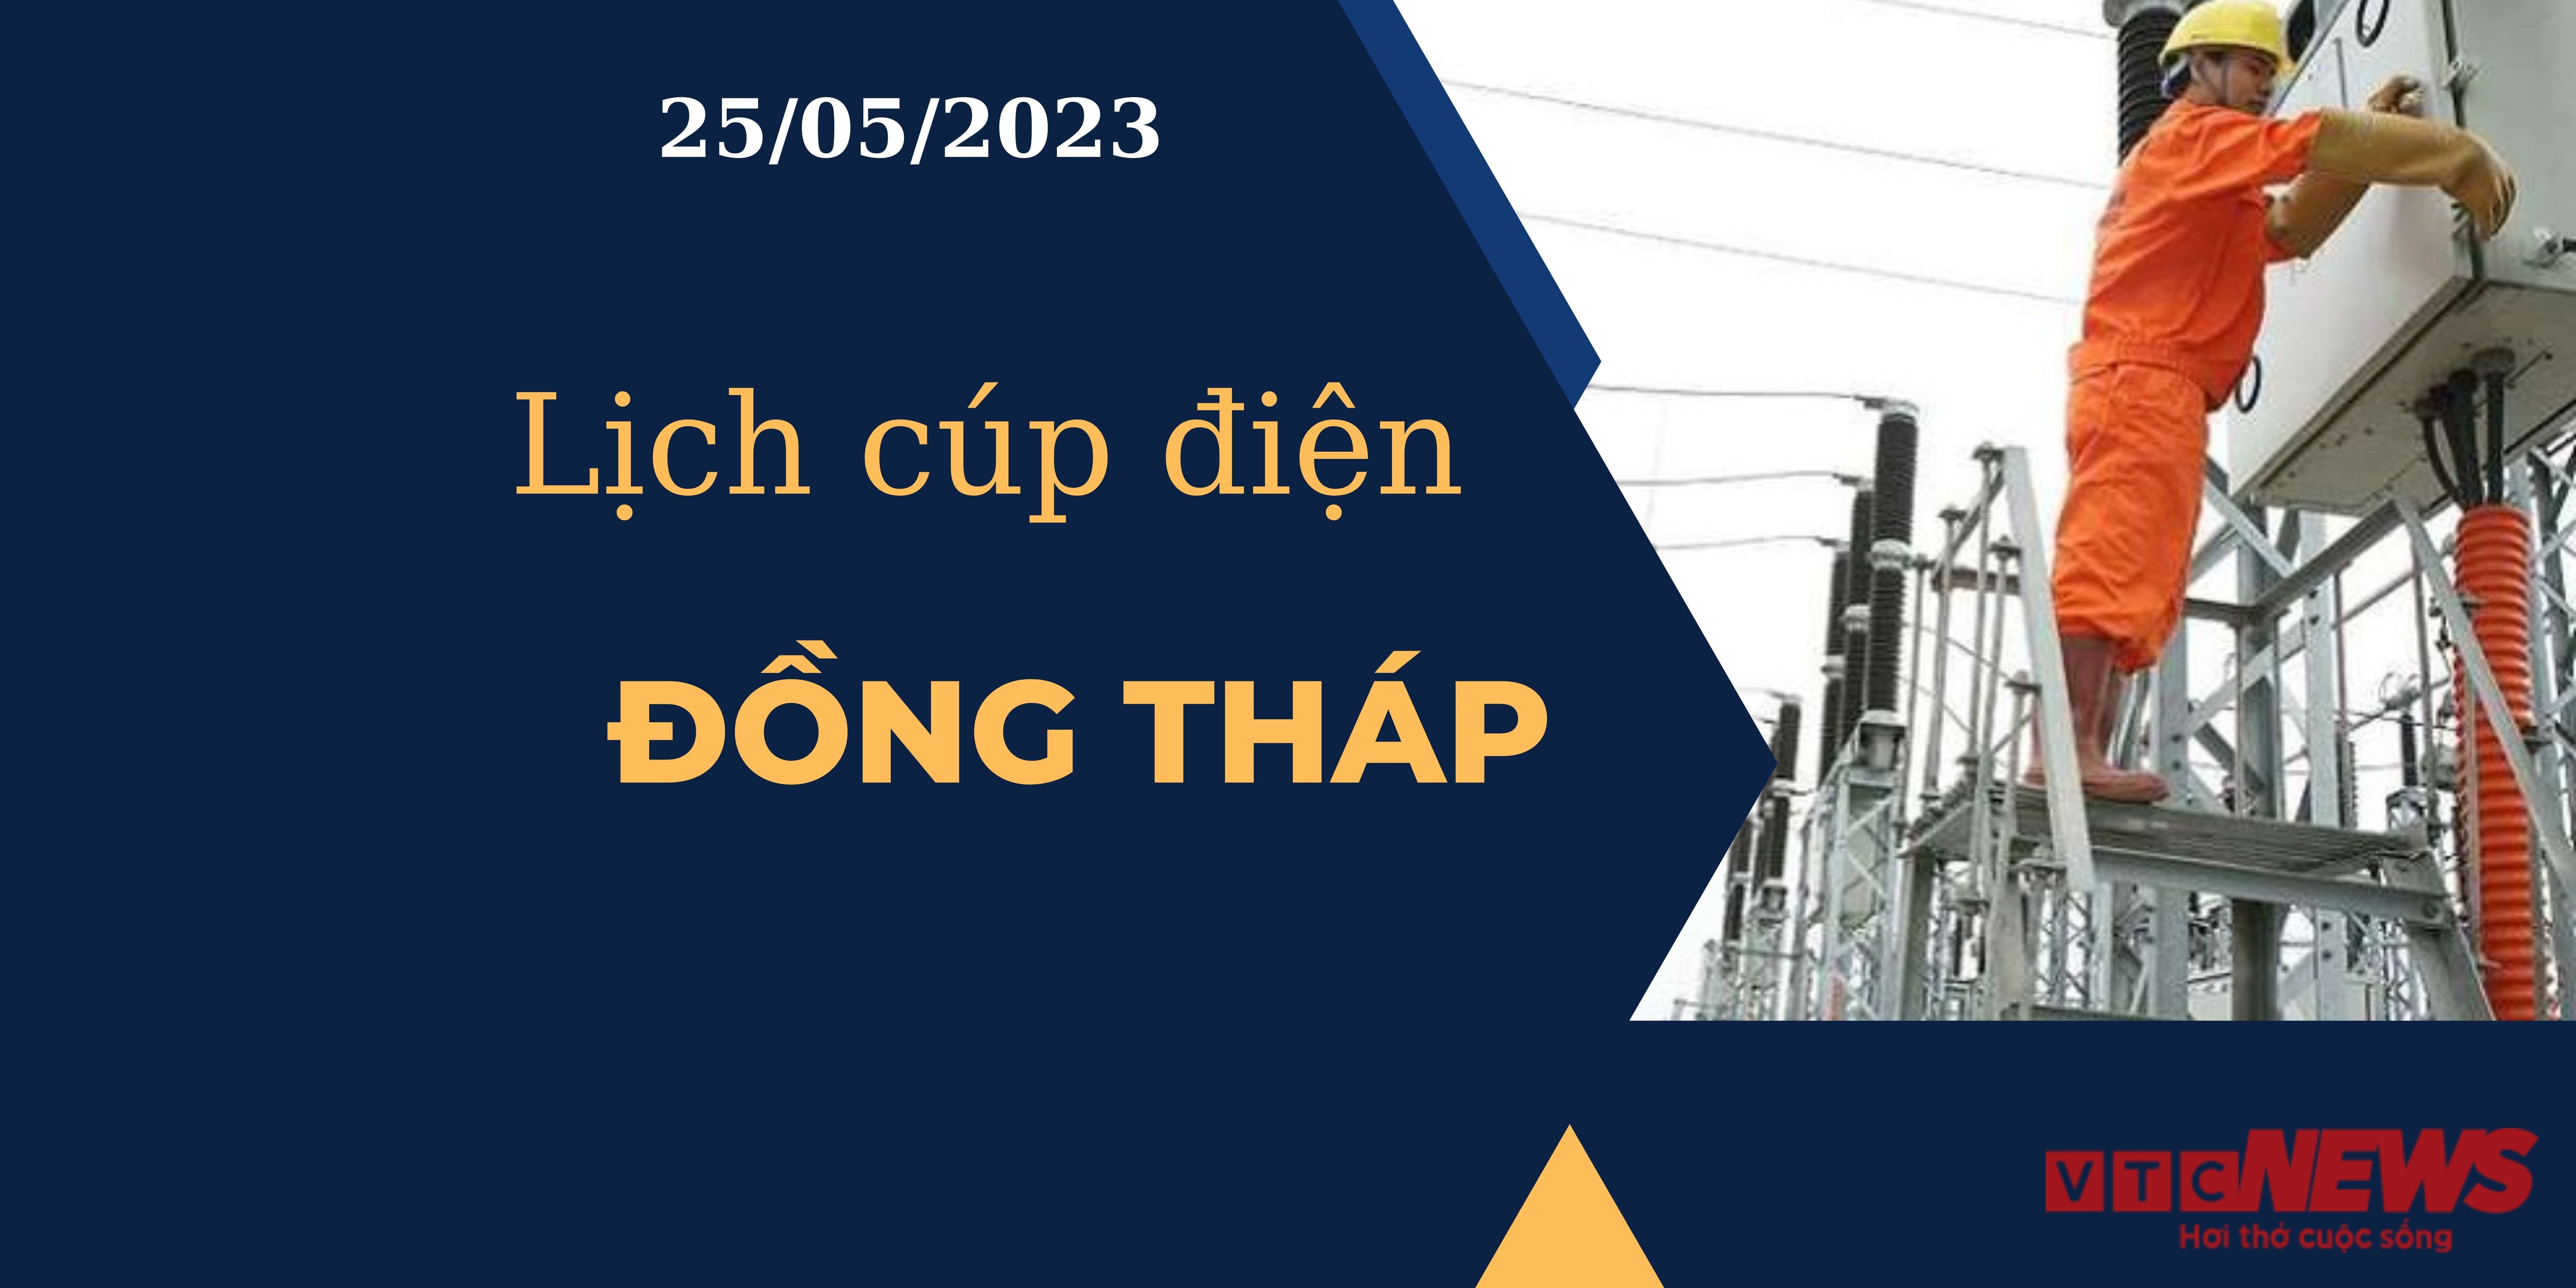 Lịch cúp điện hôm nay ngày 25/05/2023 tại Đồng Tháp - 1